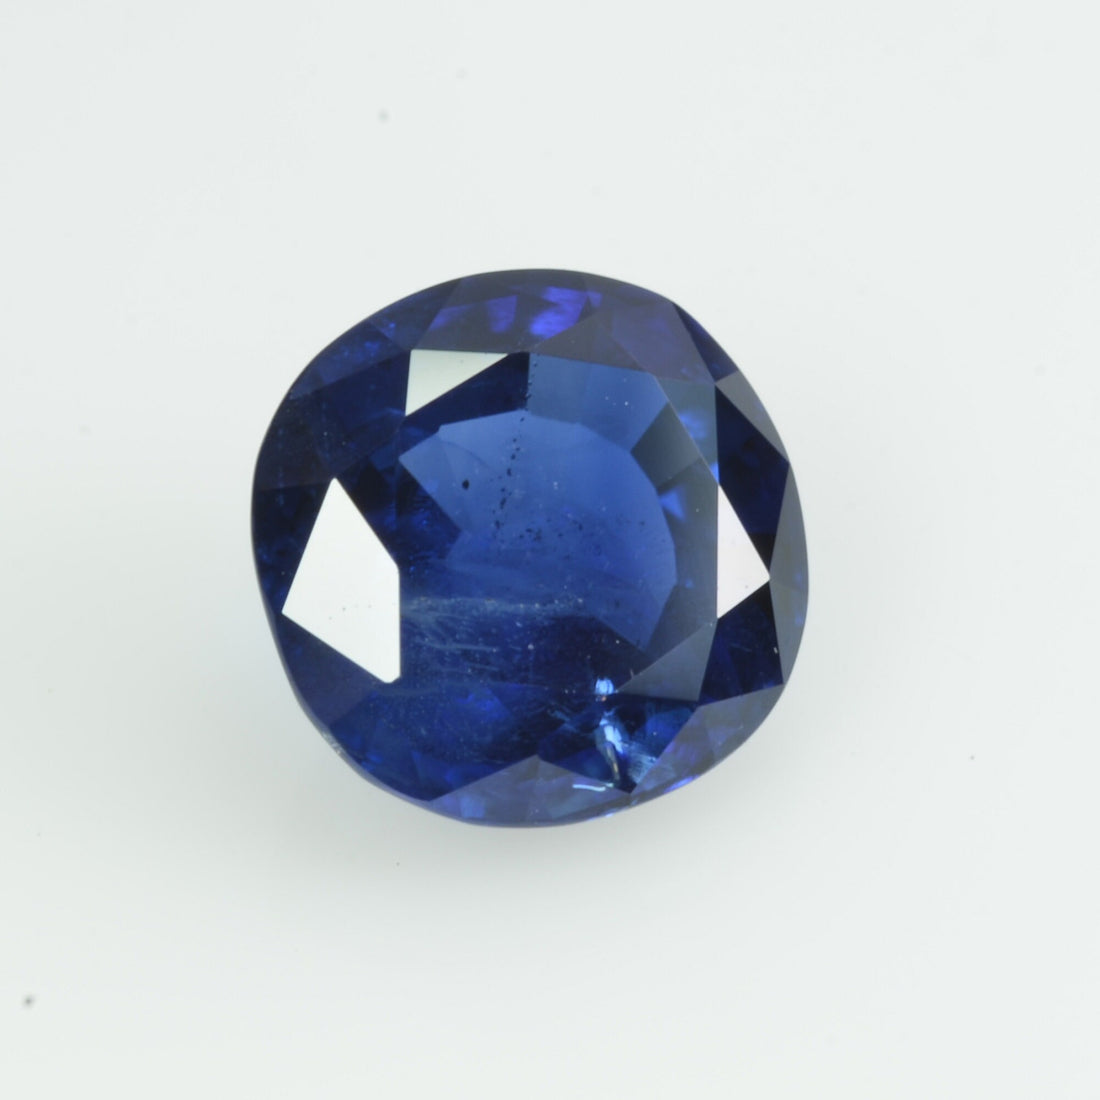 2.46 cts Natural Blue Sapphire Loose Gemstone Cushion Cut